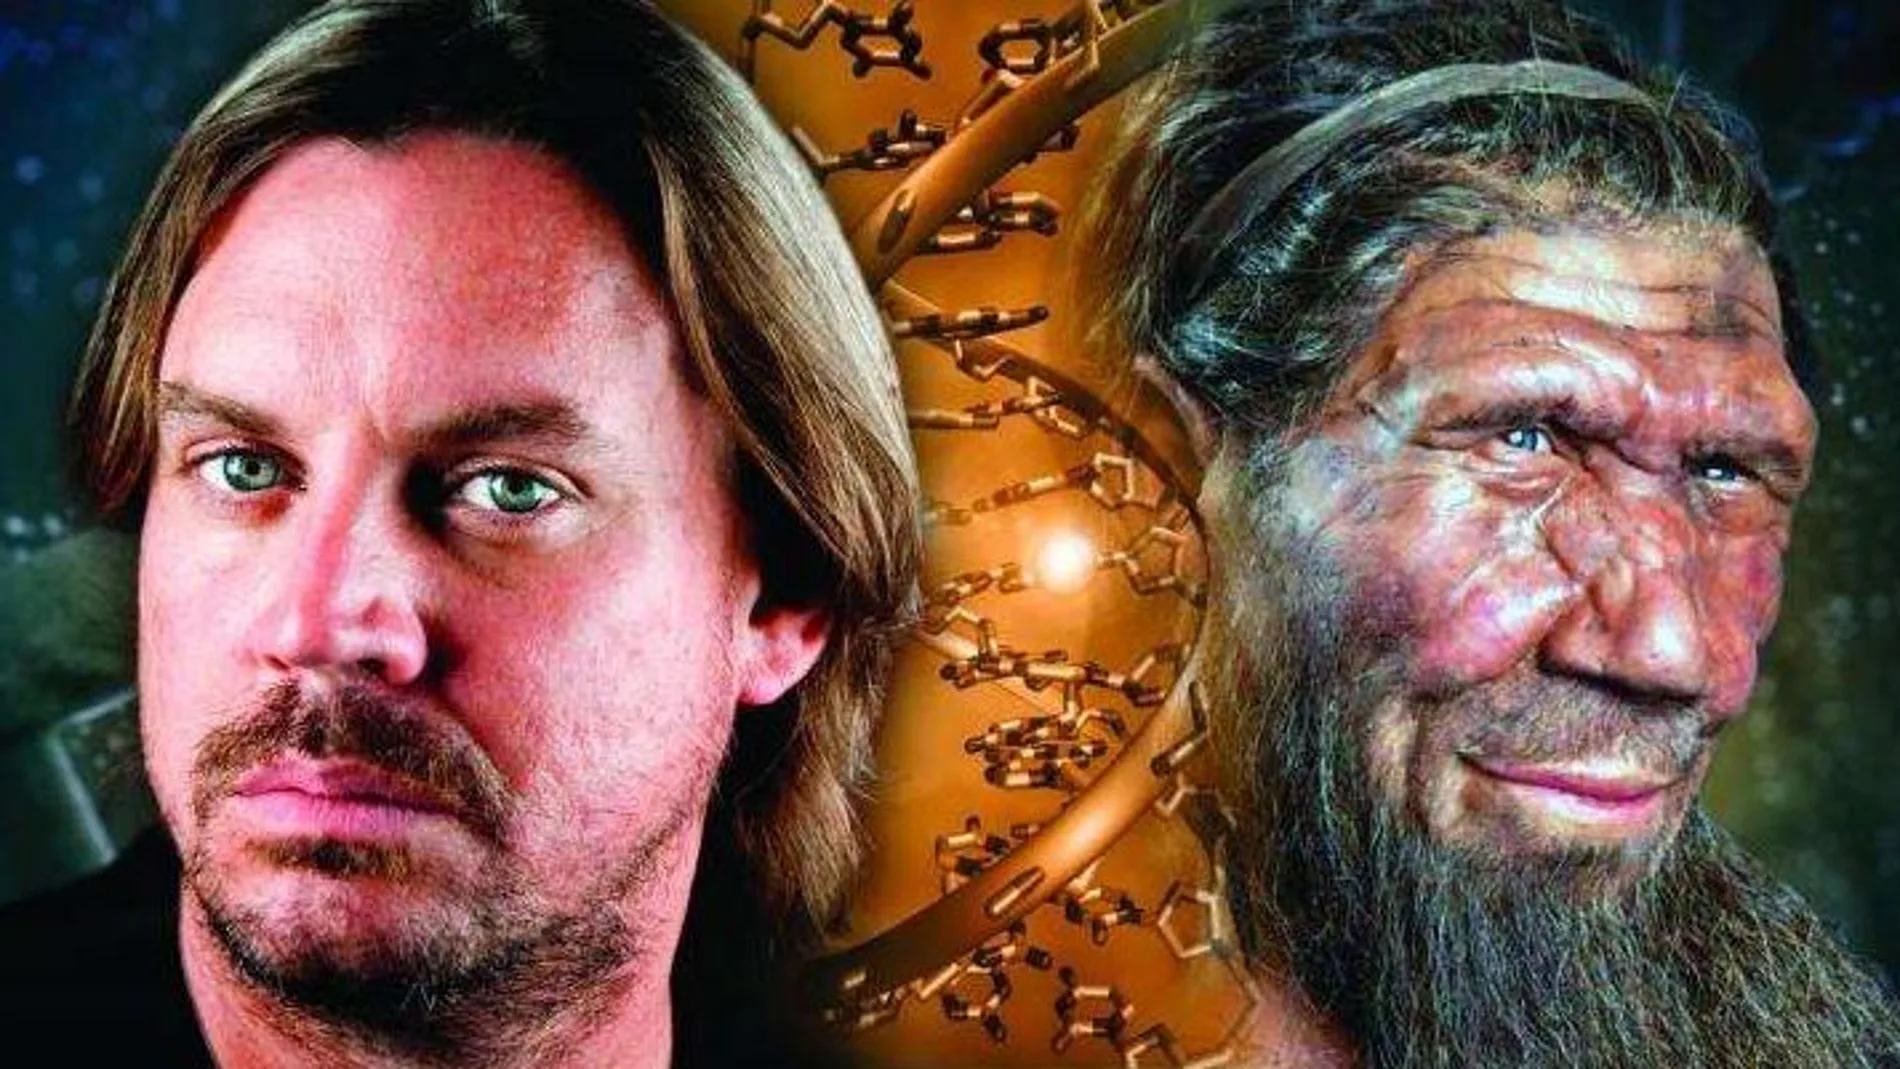 Tener ADN neandertal incrementa el riesgo de sufrir hasta 12 enfermedades